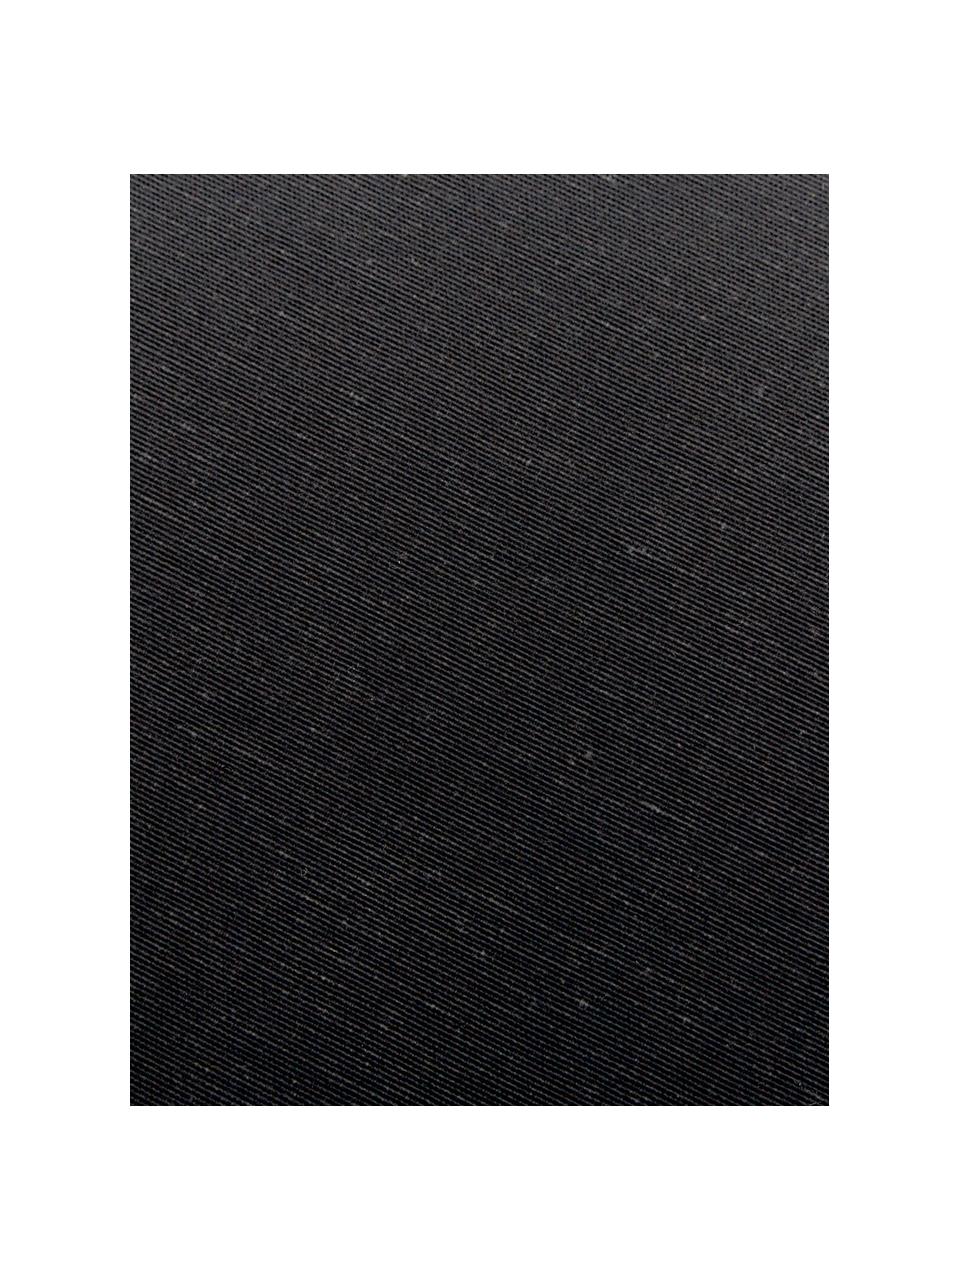 Effen bankkussen Panama in zwart, 50% katoen, 45% polyester,
5% andere vezels, Zwart, 48 x 120 cm